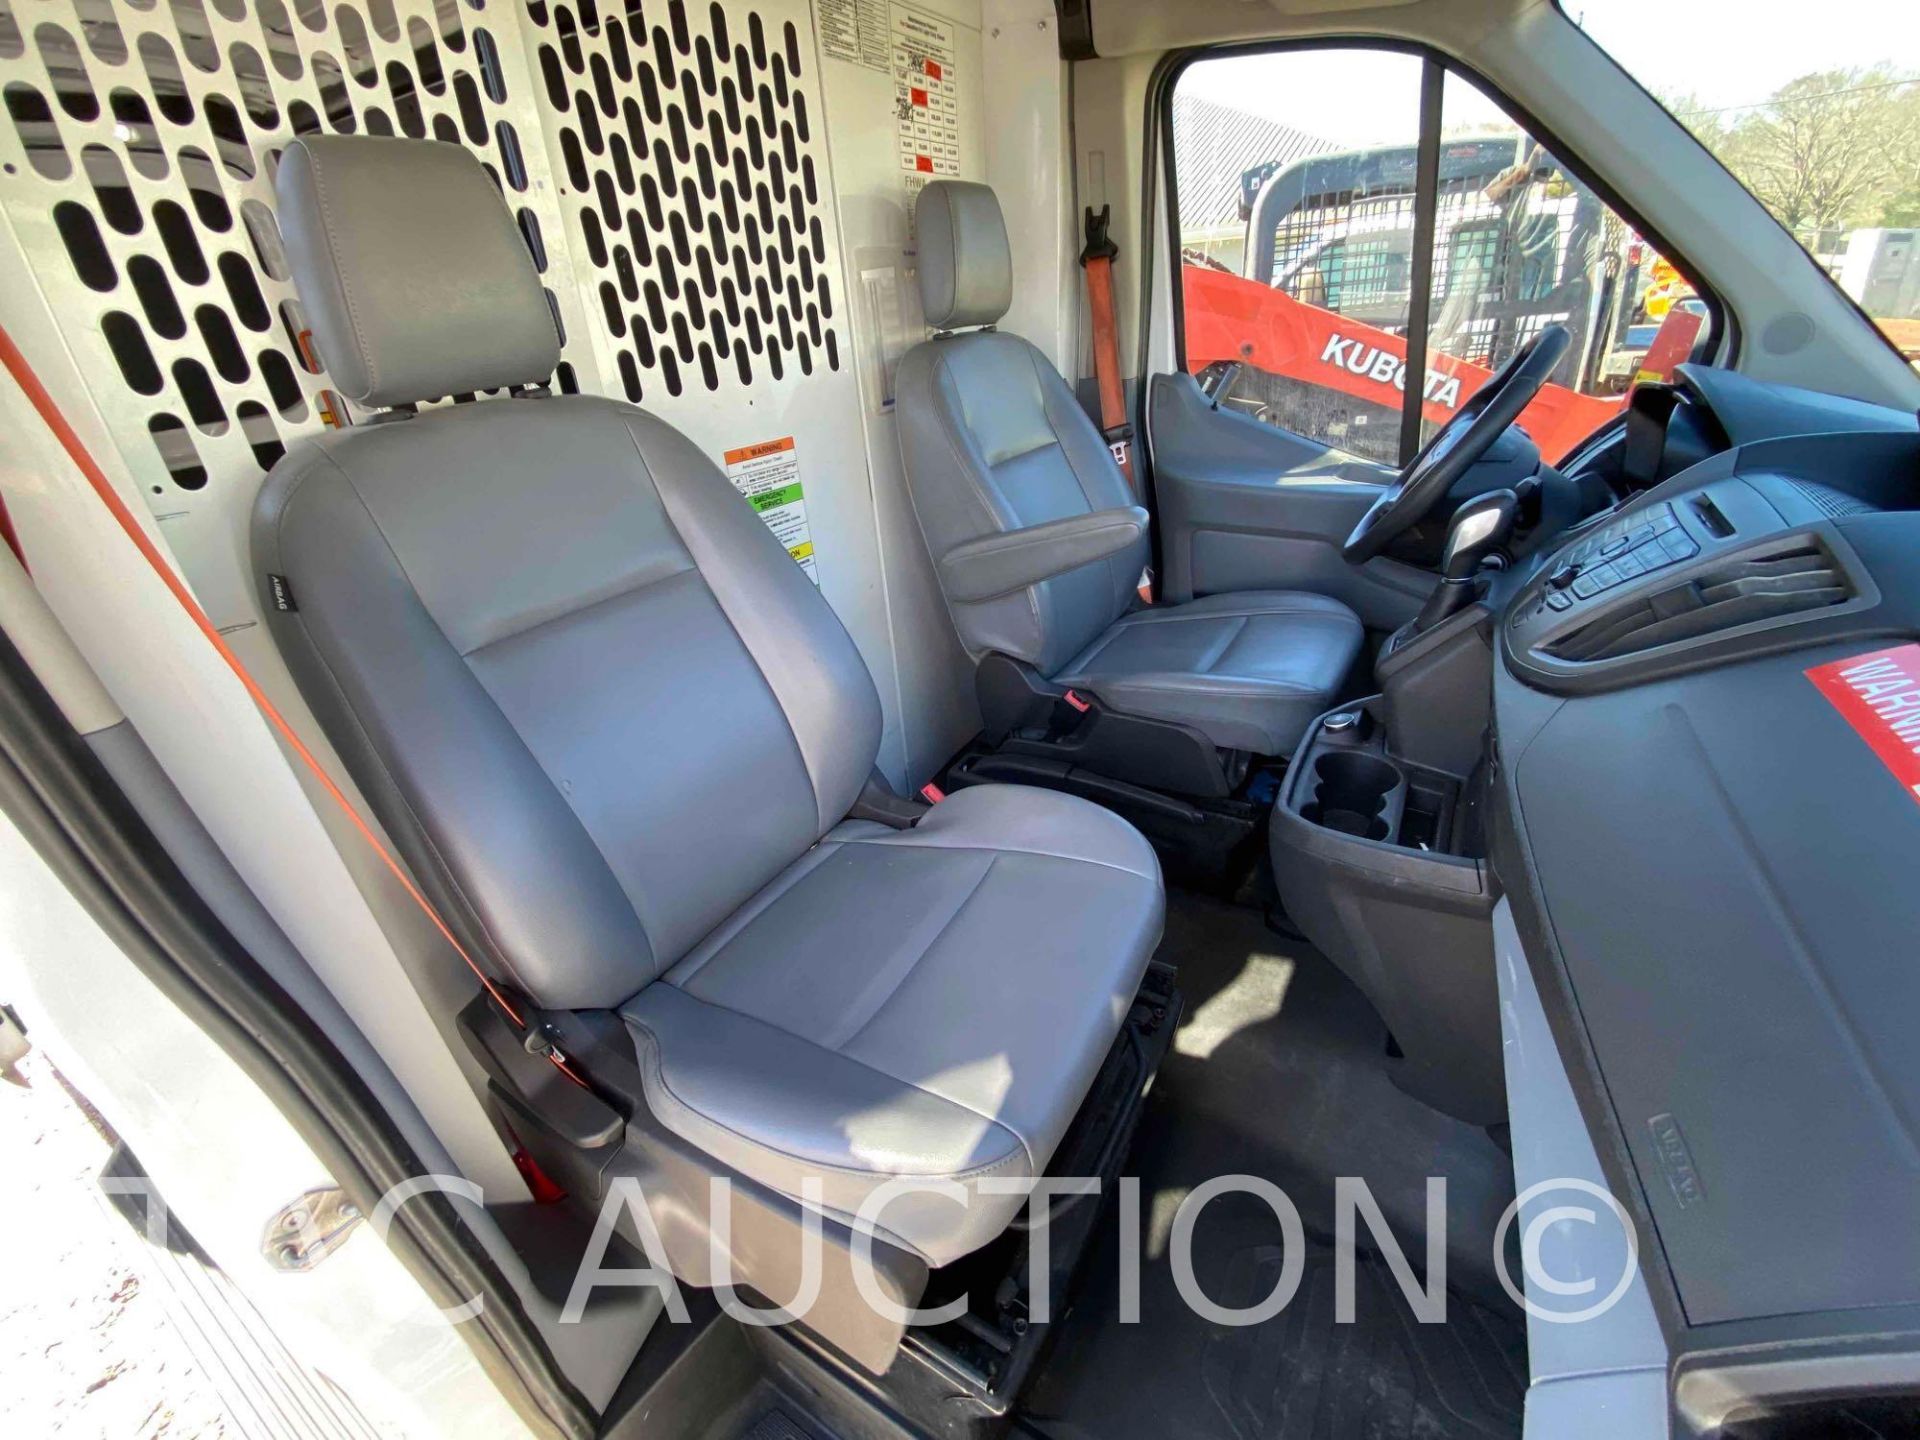 2019 Ford Transit 150 Cargo Van - Image 23 of 49